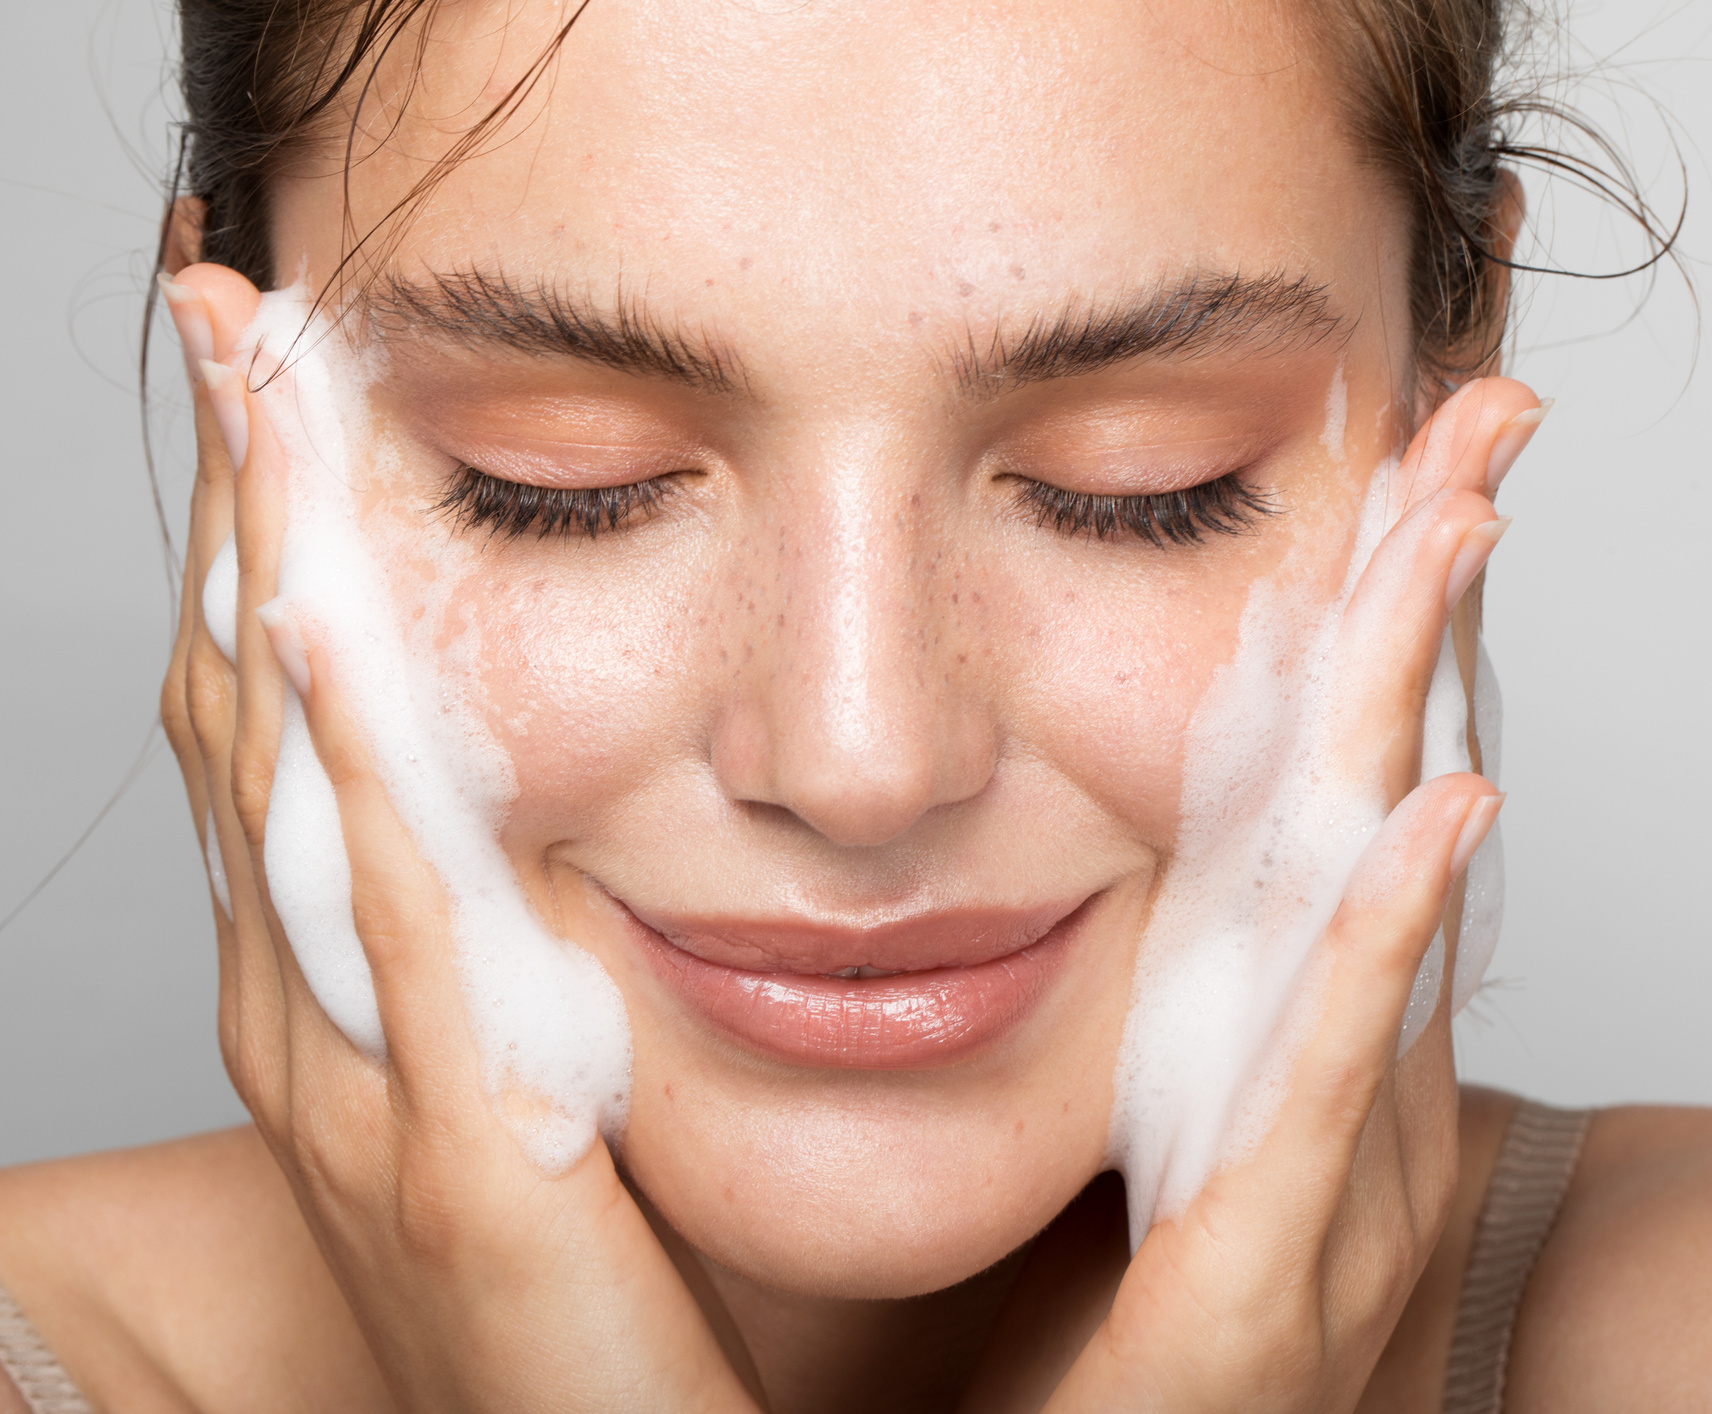 Estos 7 tips te van a ayudar a cerrar los poros y evitar que se dilaten